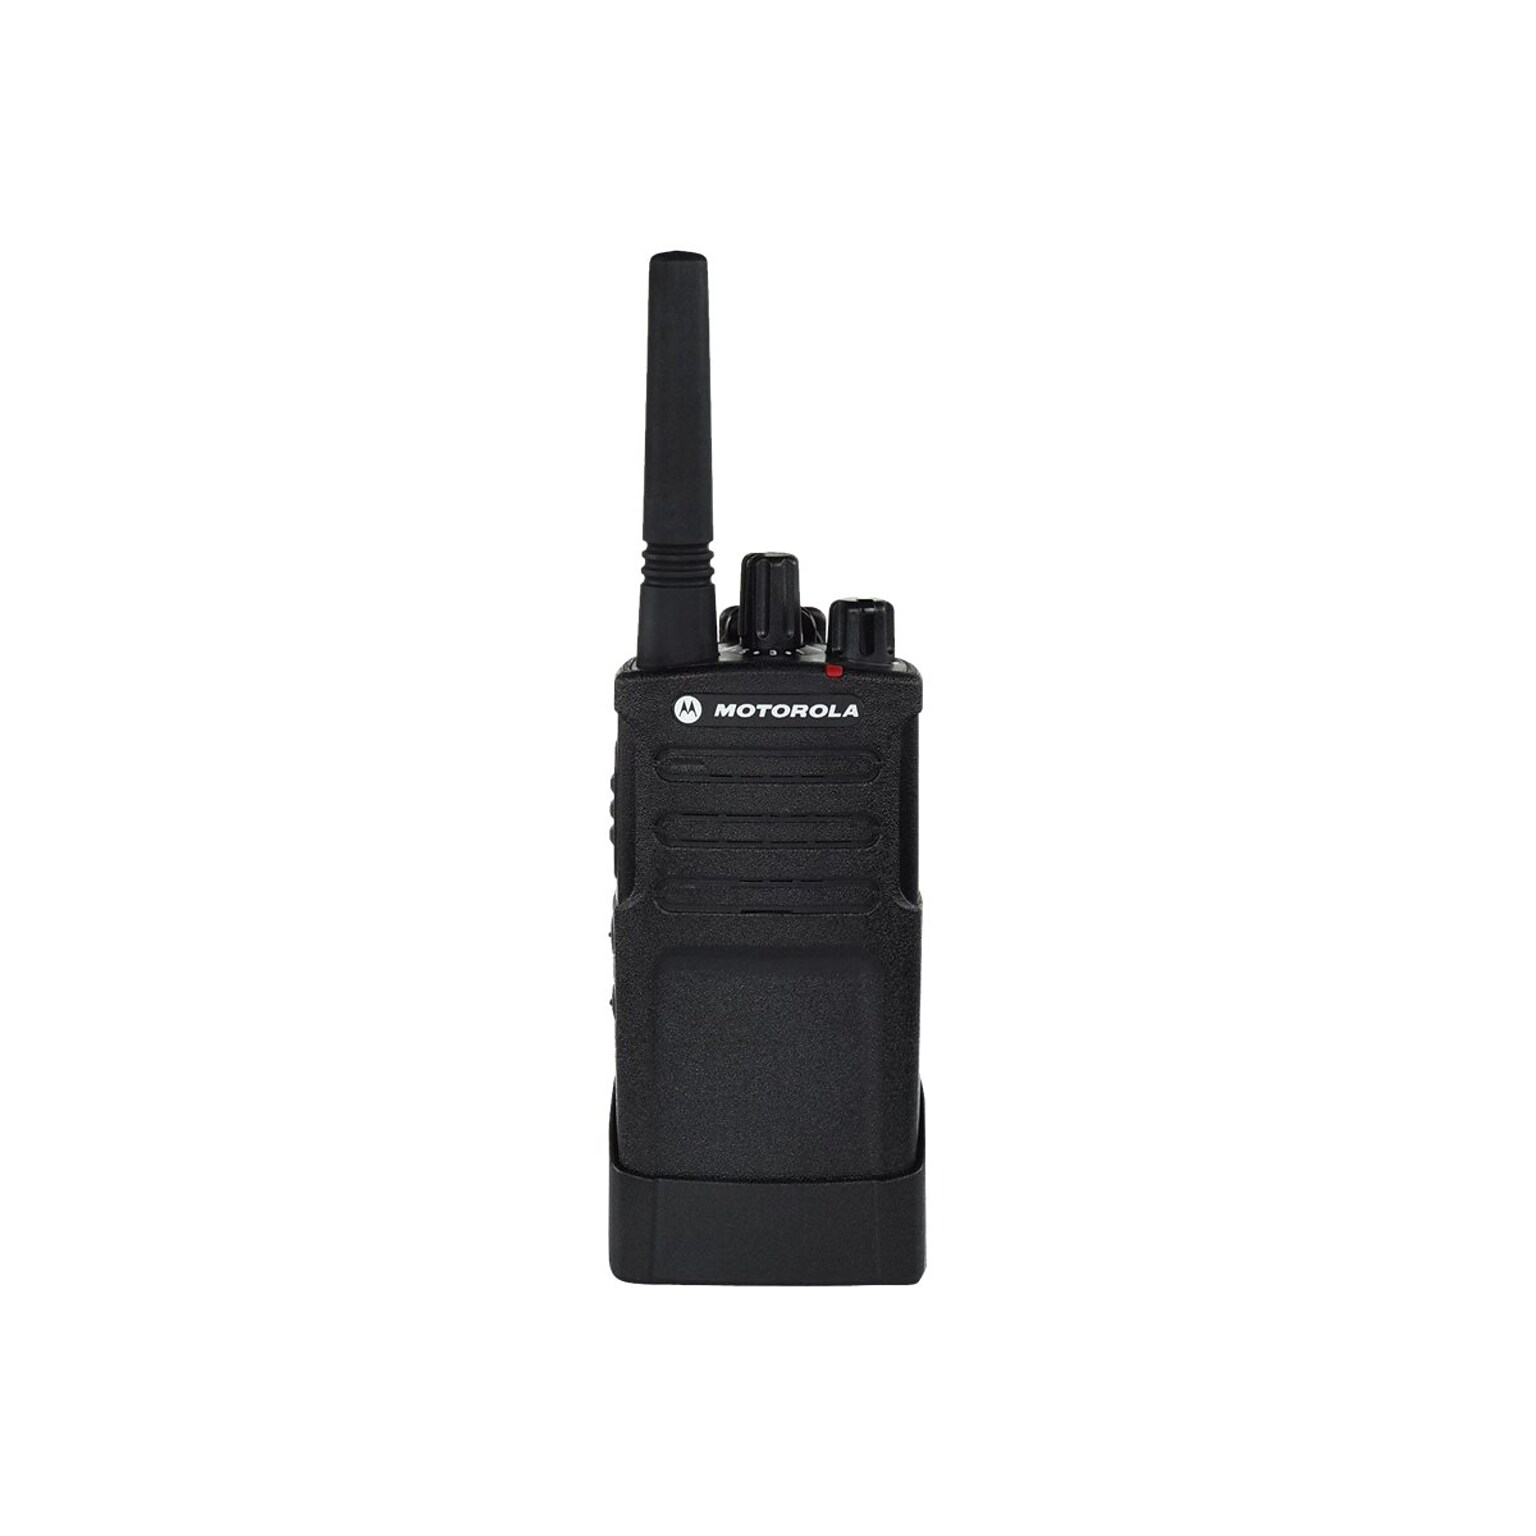 Motorola RM Series Two-Way Radio, VHF, 8-Channel, Black (RMV2080)